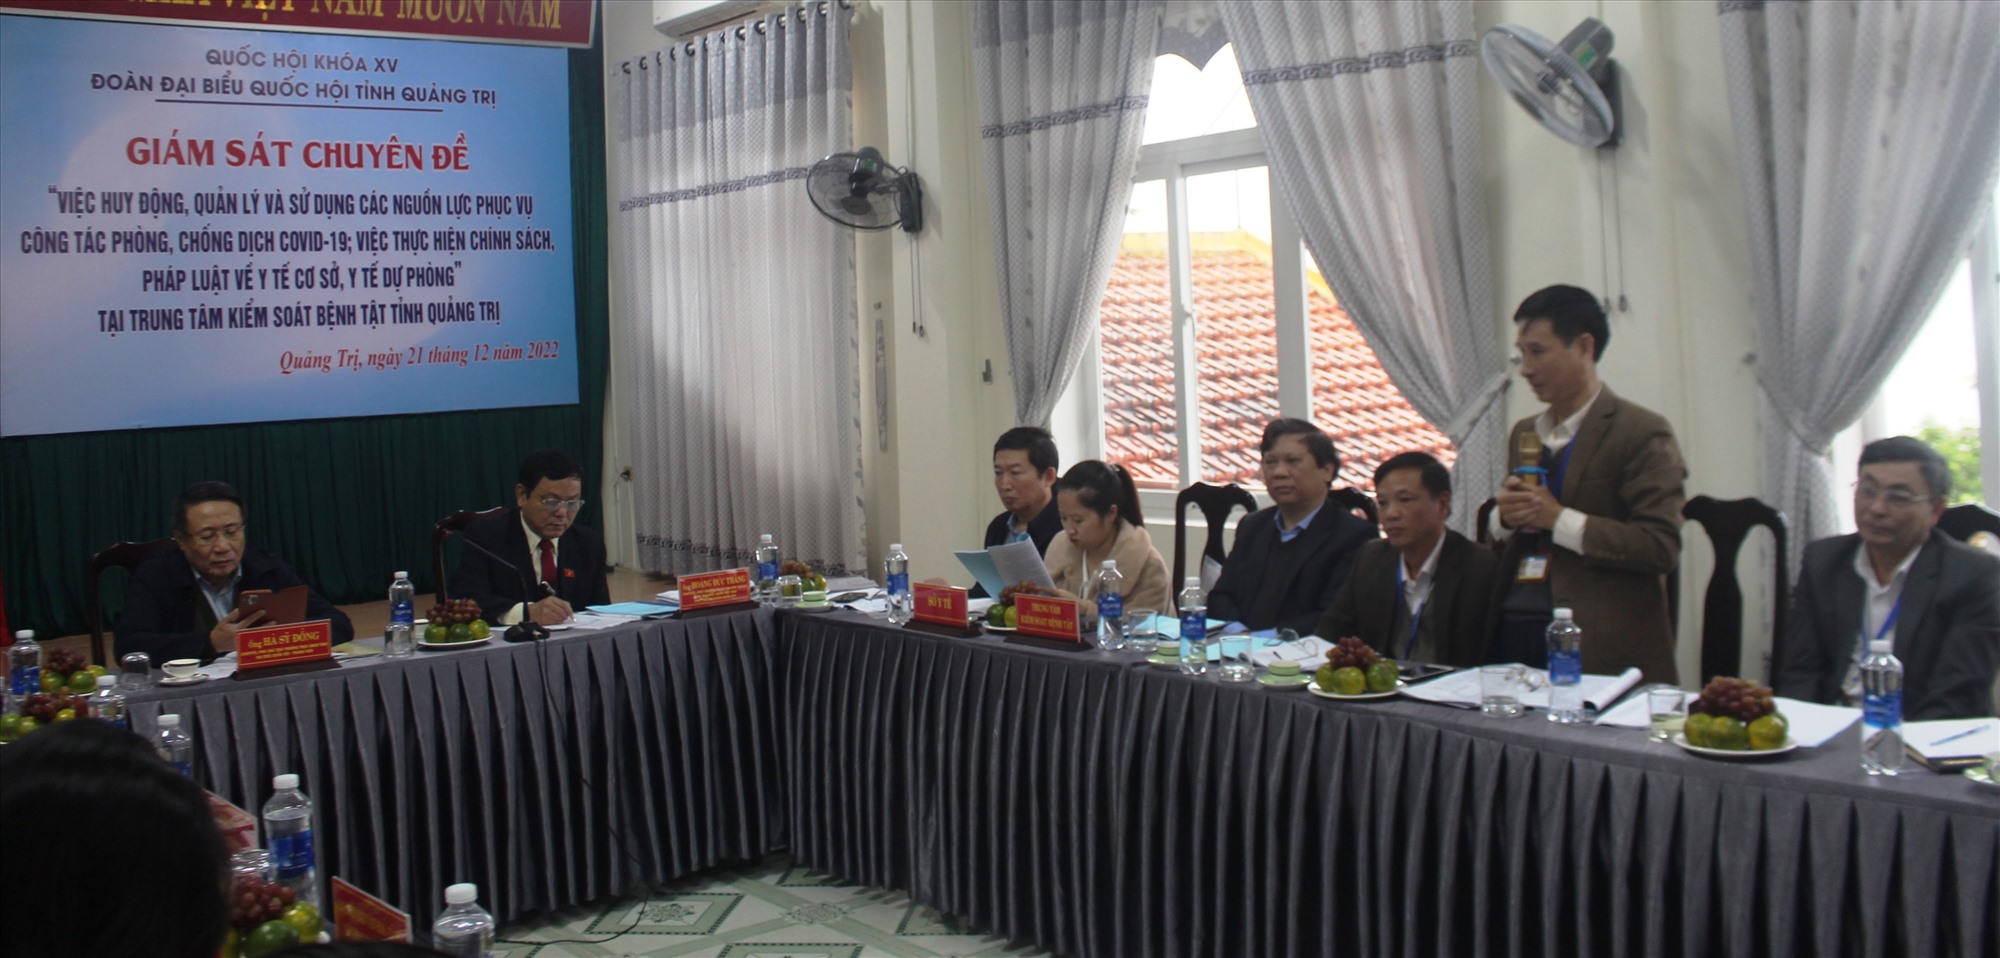 Đại diện lãnh đạo Trung tâm Kiểm soát bệnh tật tỉnh Quảng Trị báo cáo về hoạt động phòng chống dịch Covid-19. Ảnh: Bội Nhiên